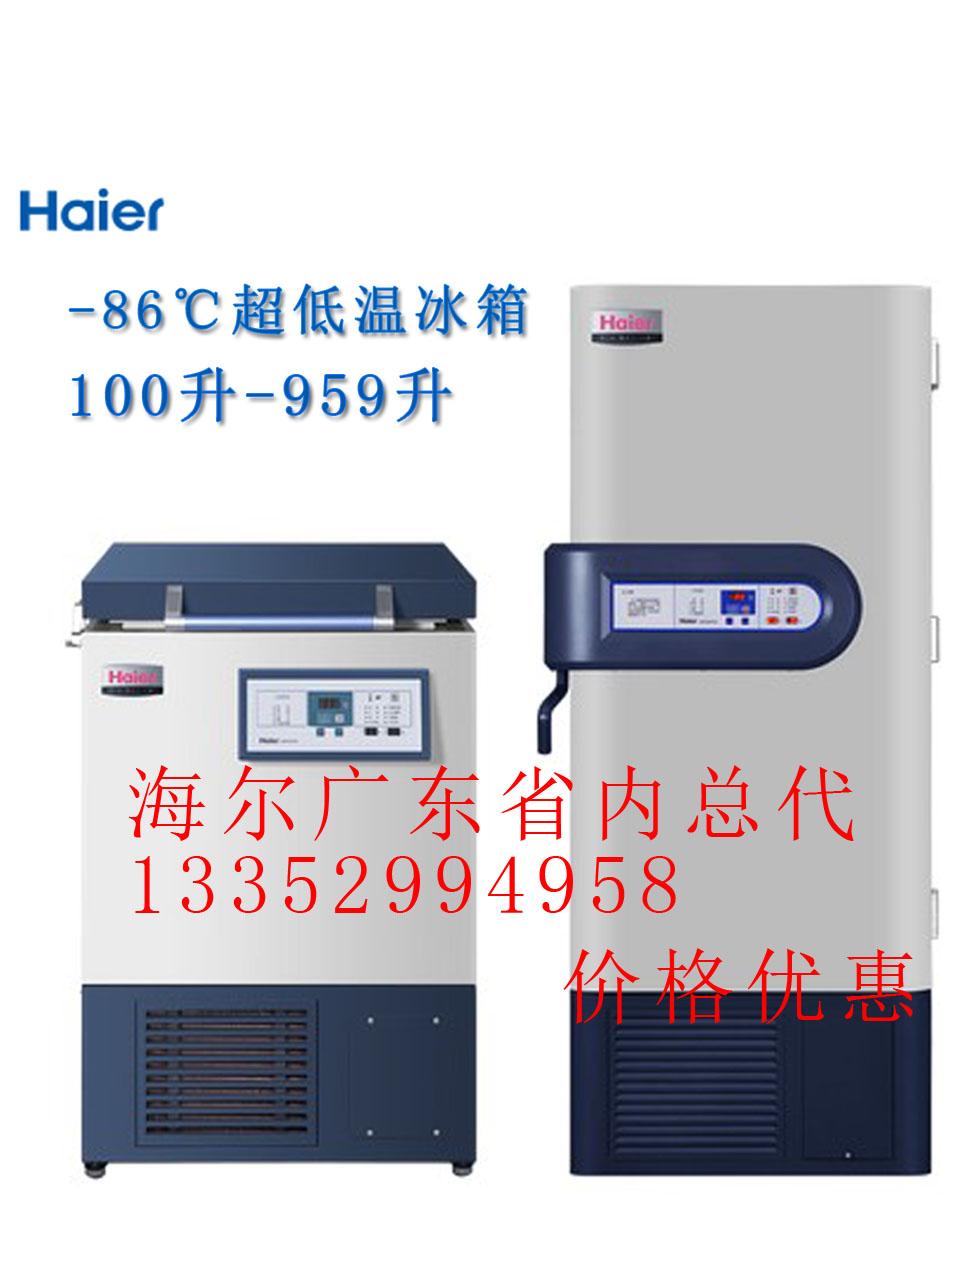 节能芯超低温保存箱  DW-86L338(J)